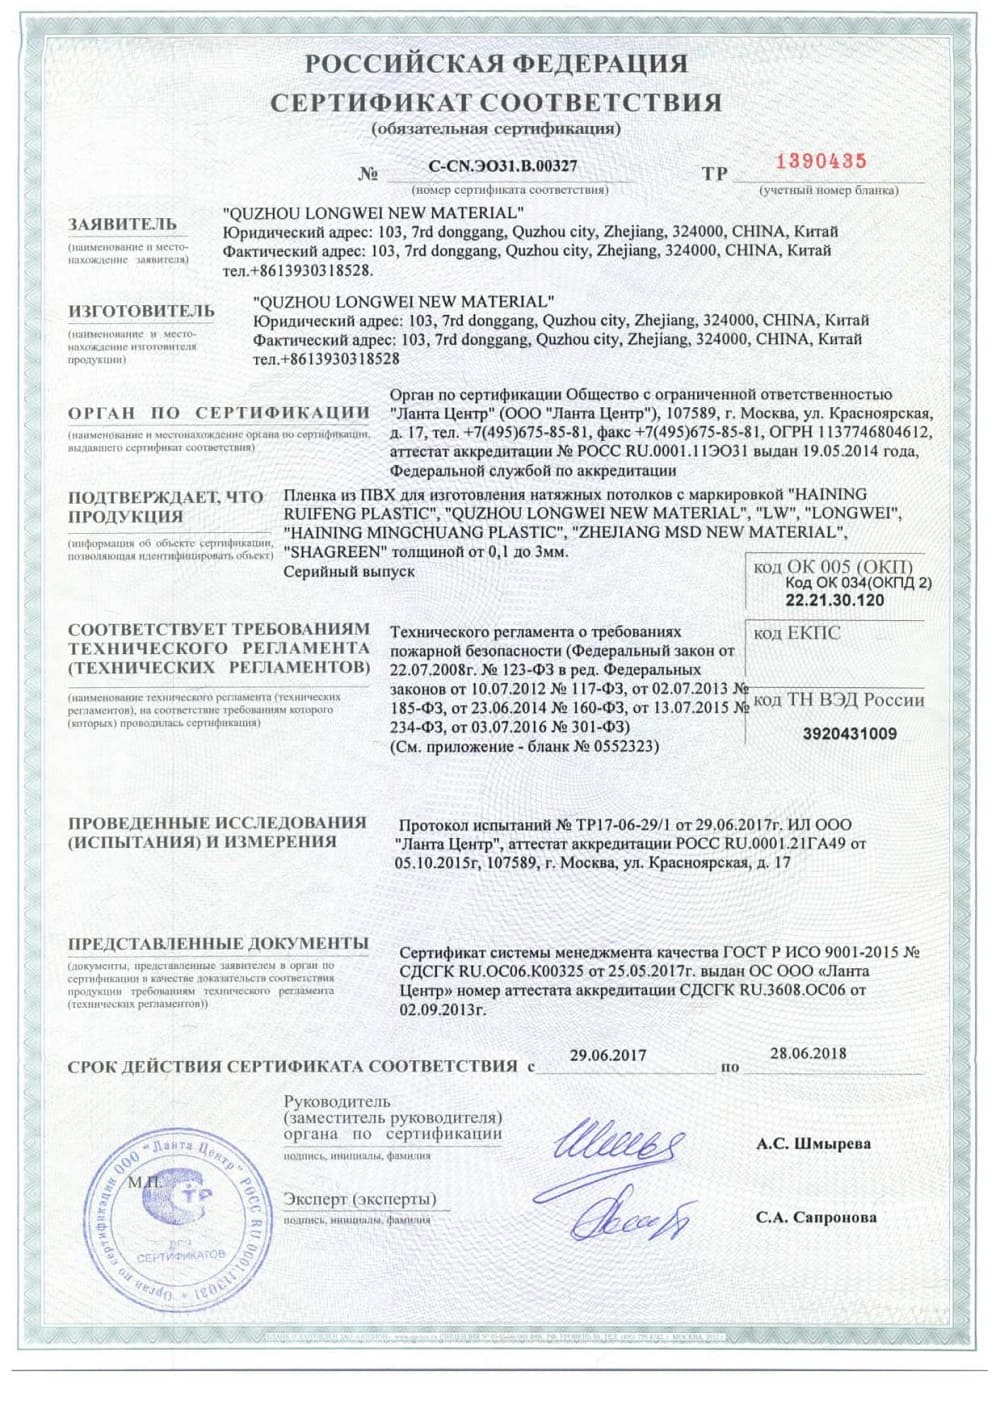 Сертификат соответствия на натяжные полотна Алези, предназначенные для оригинальной фотопечати